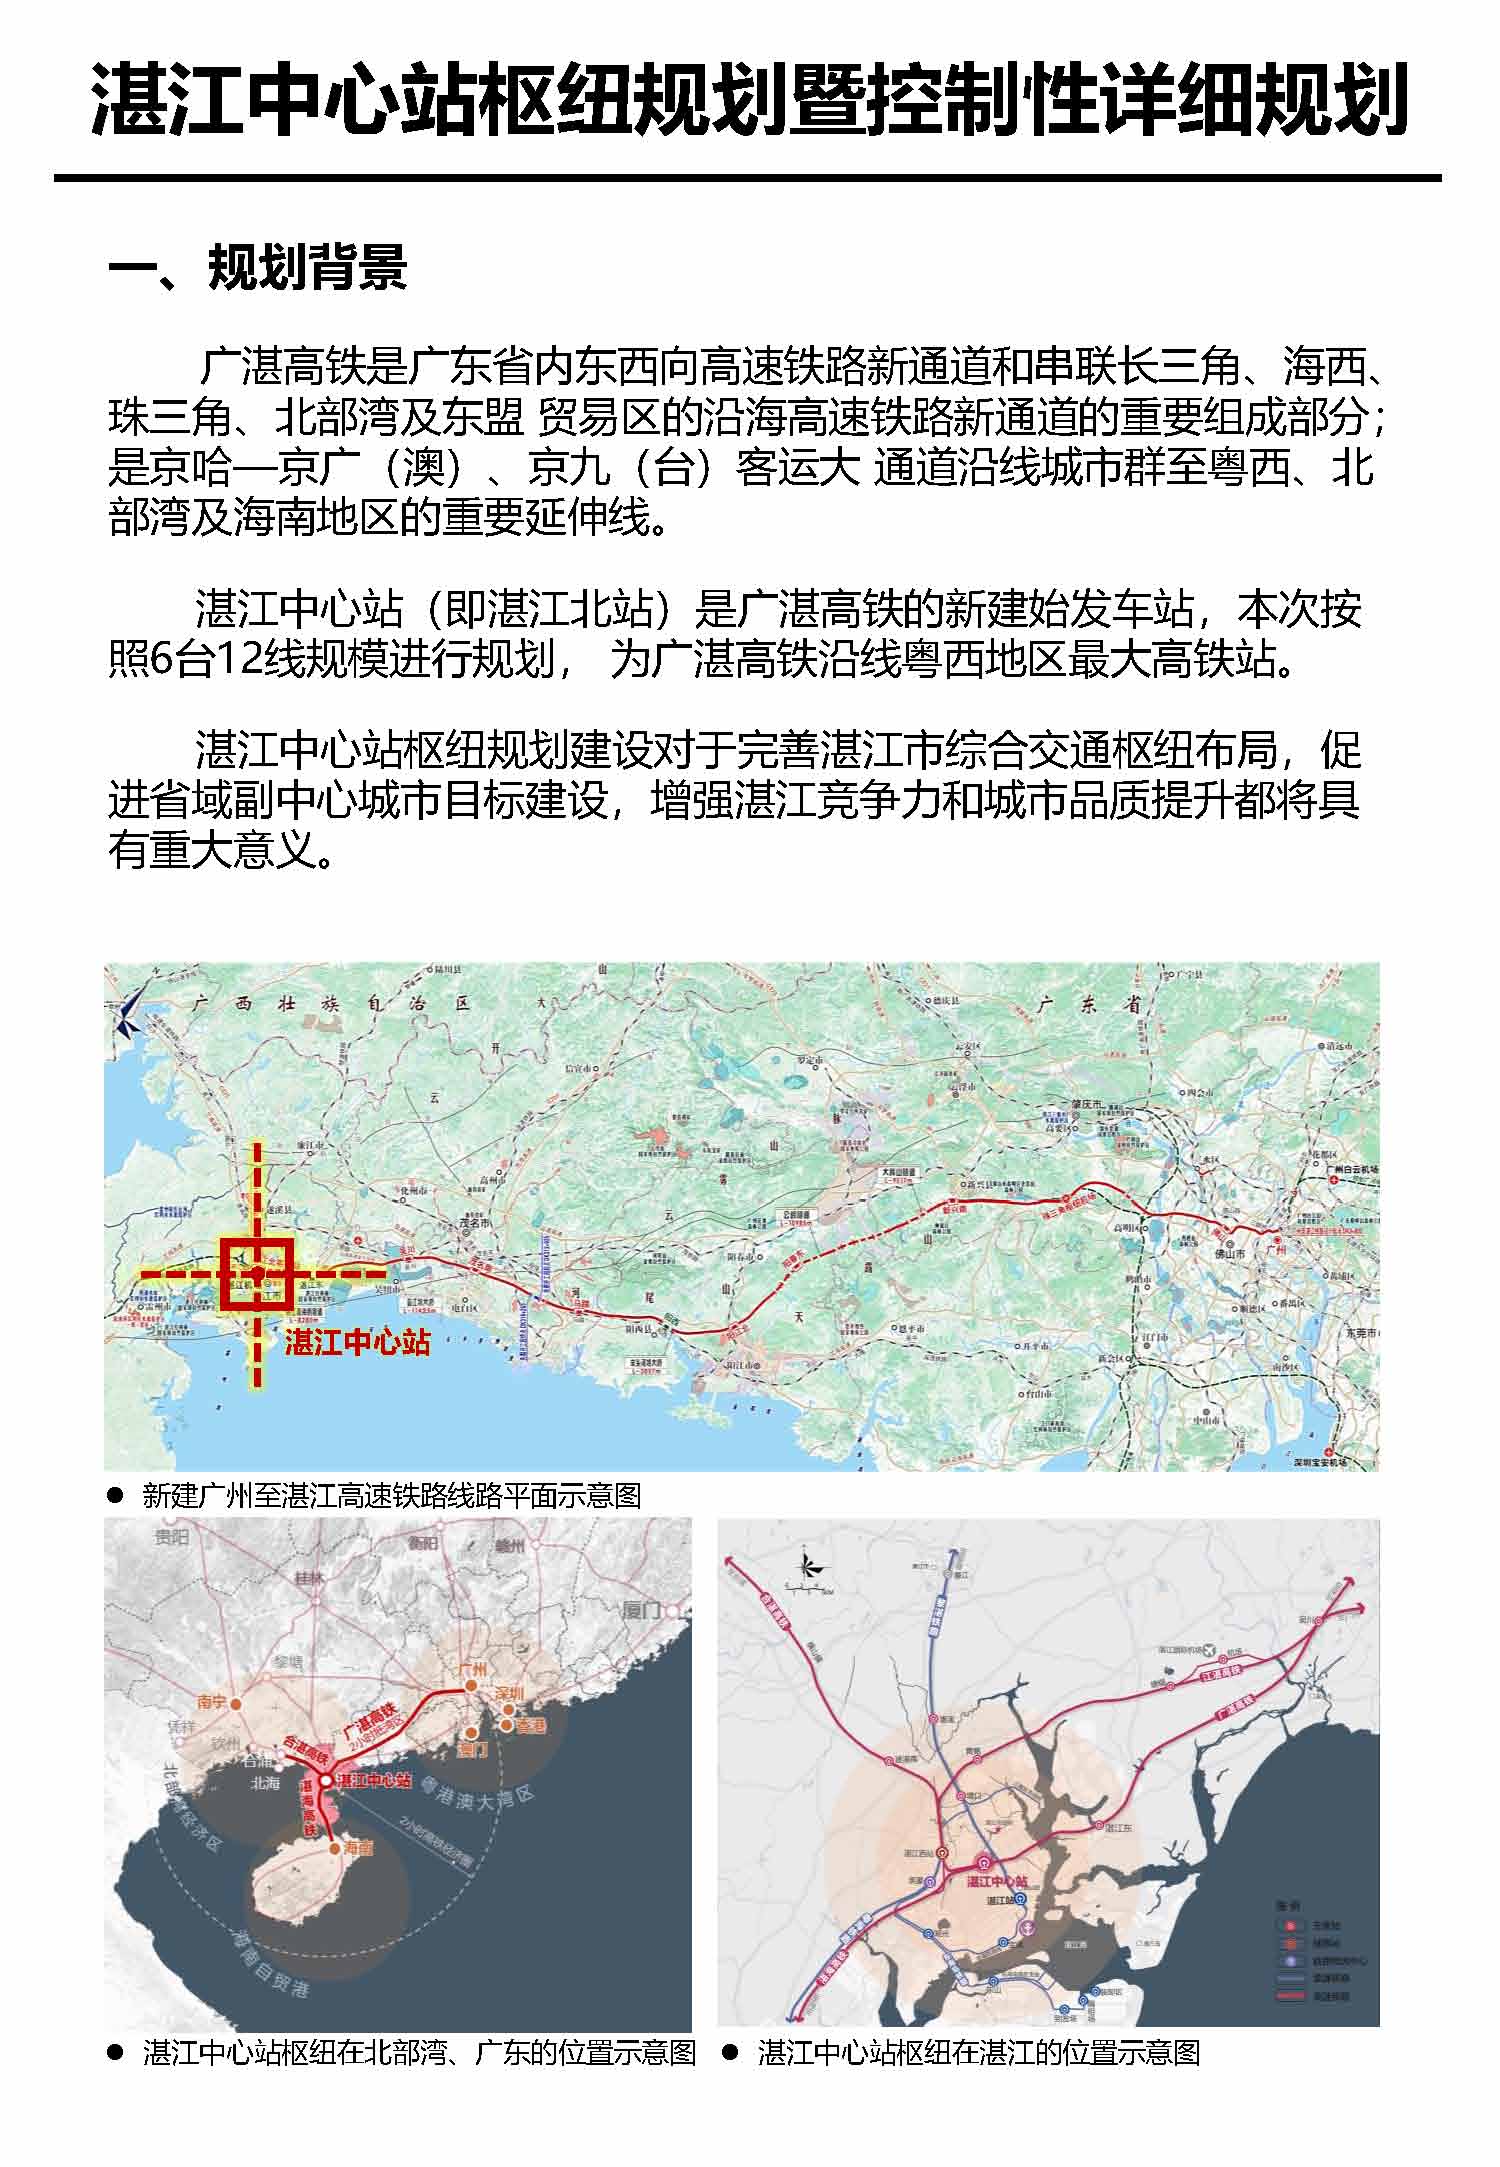 湛江市中心枢纽地区规划暨控制线详细规划报批后公告_页面_3.jpg